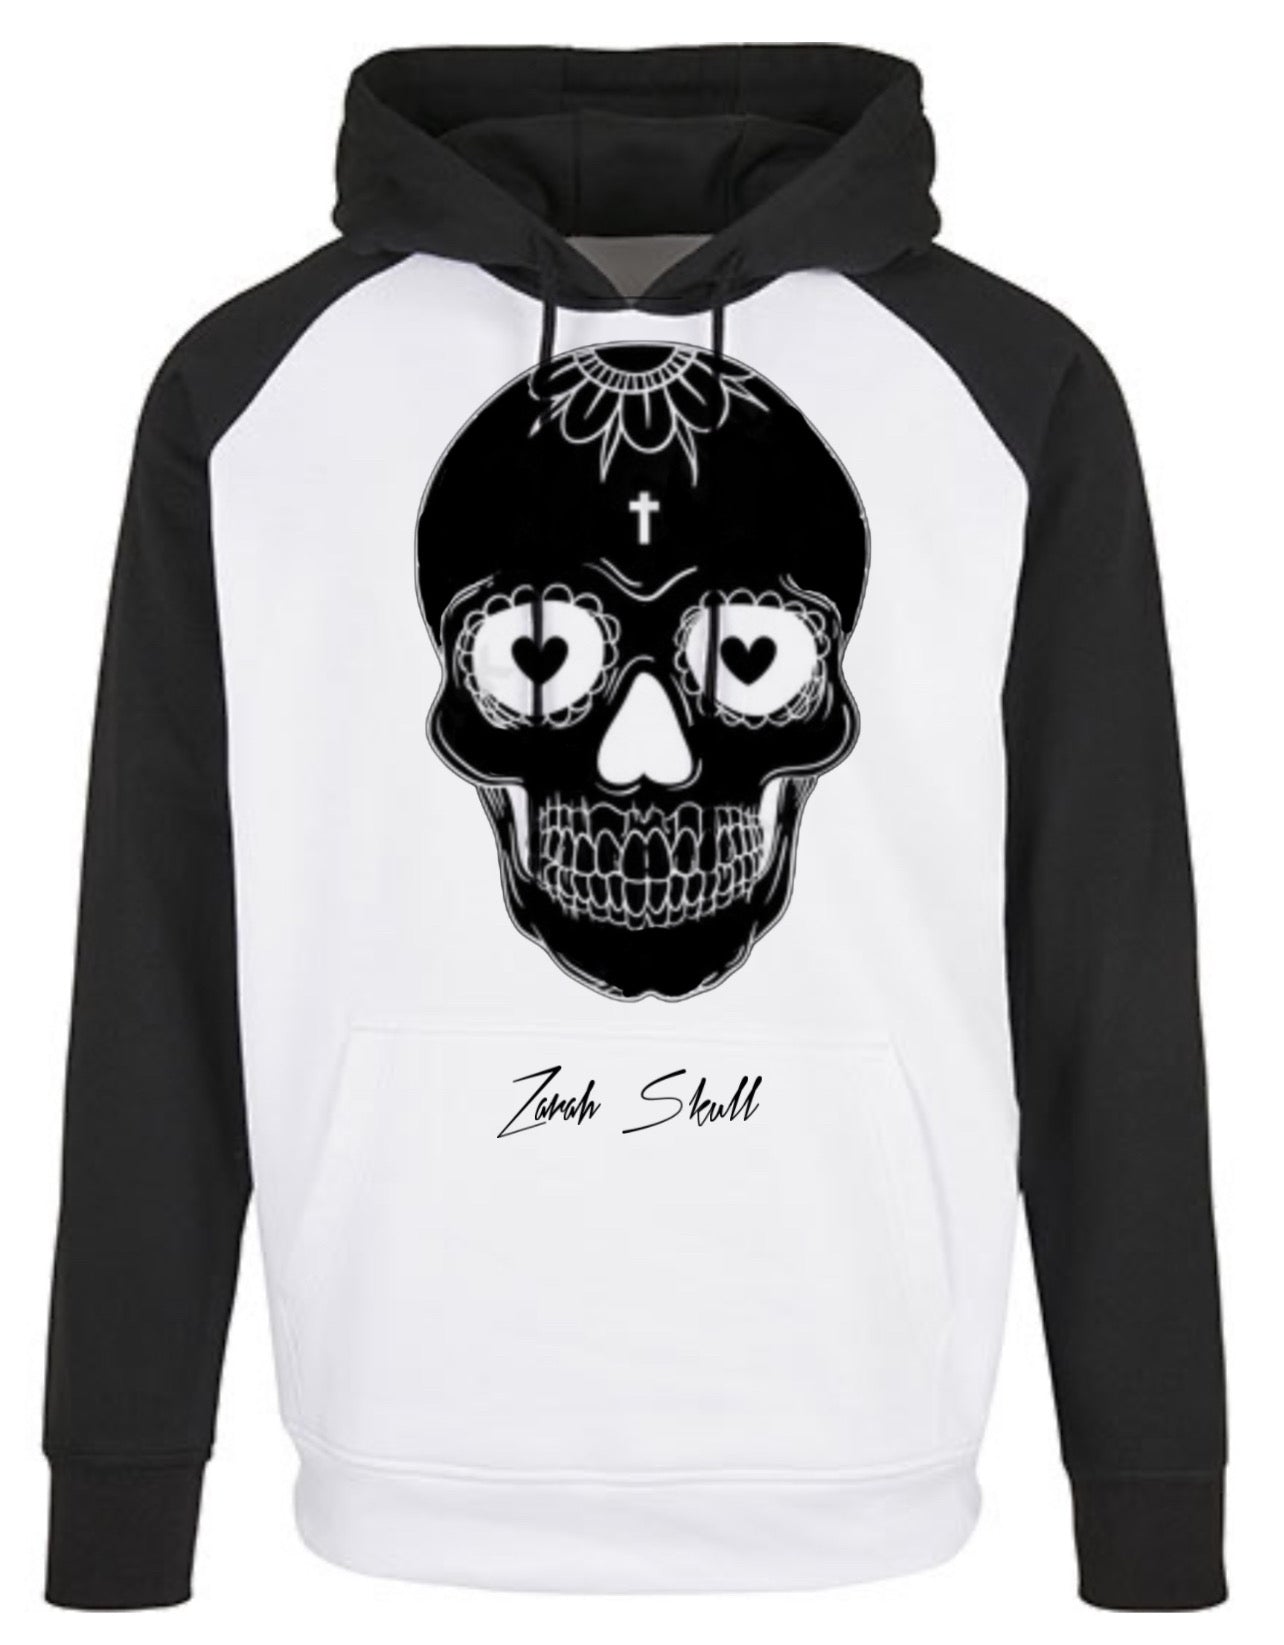 „ZarahSkull" Hoodie black/white "Skull"